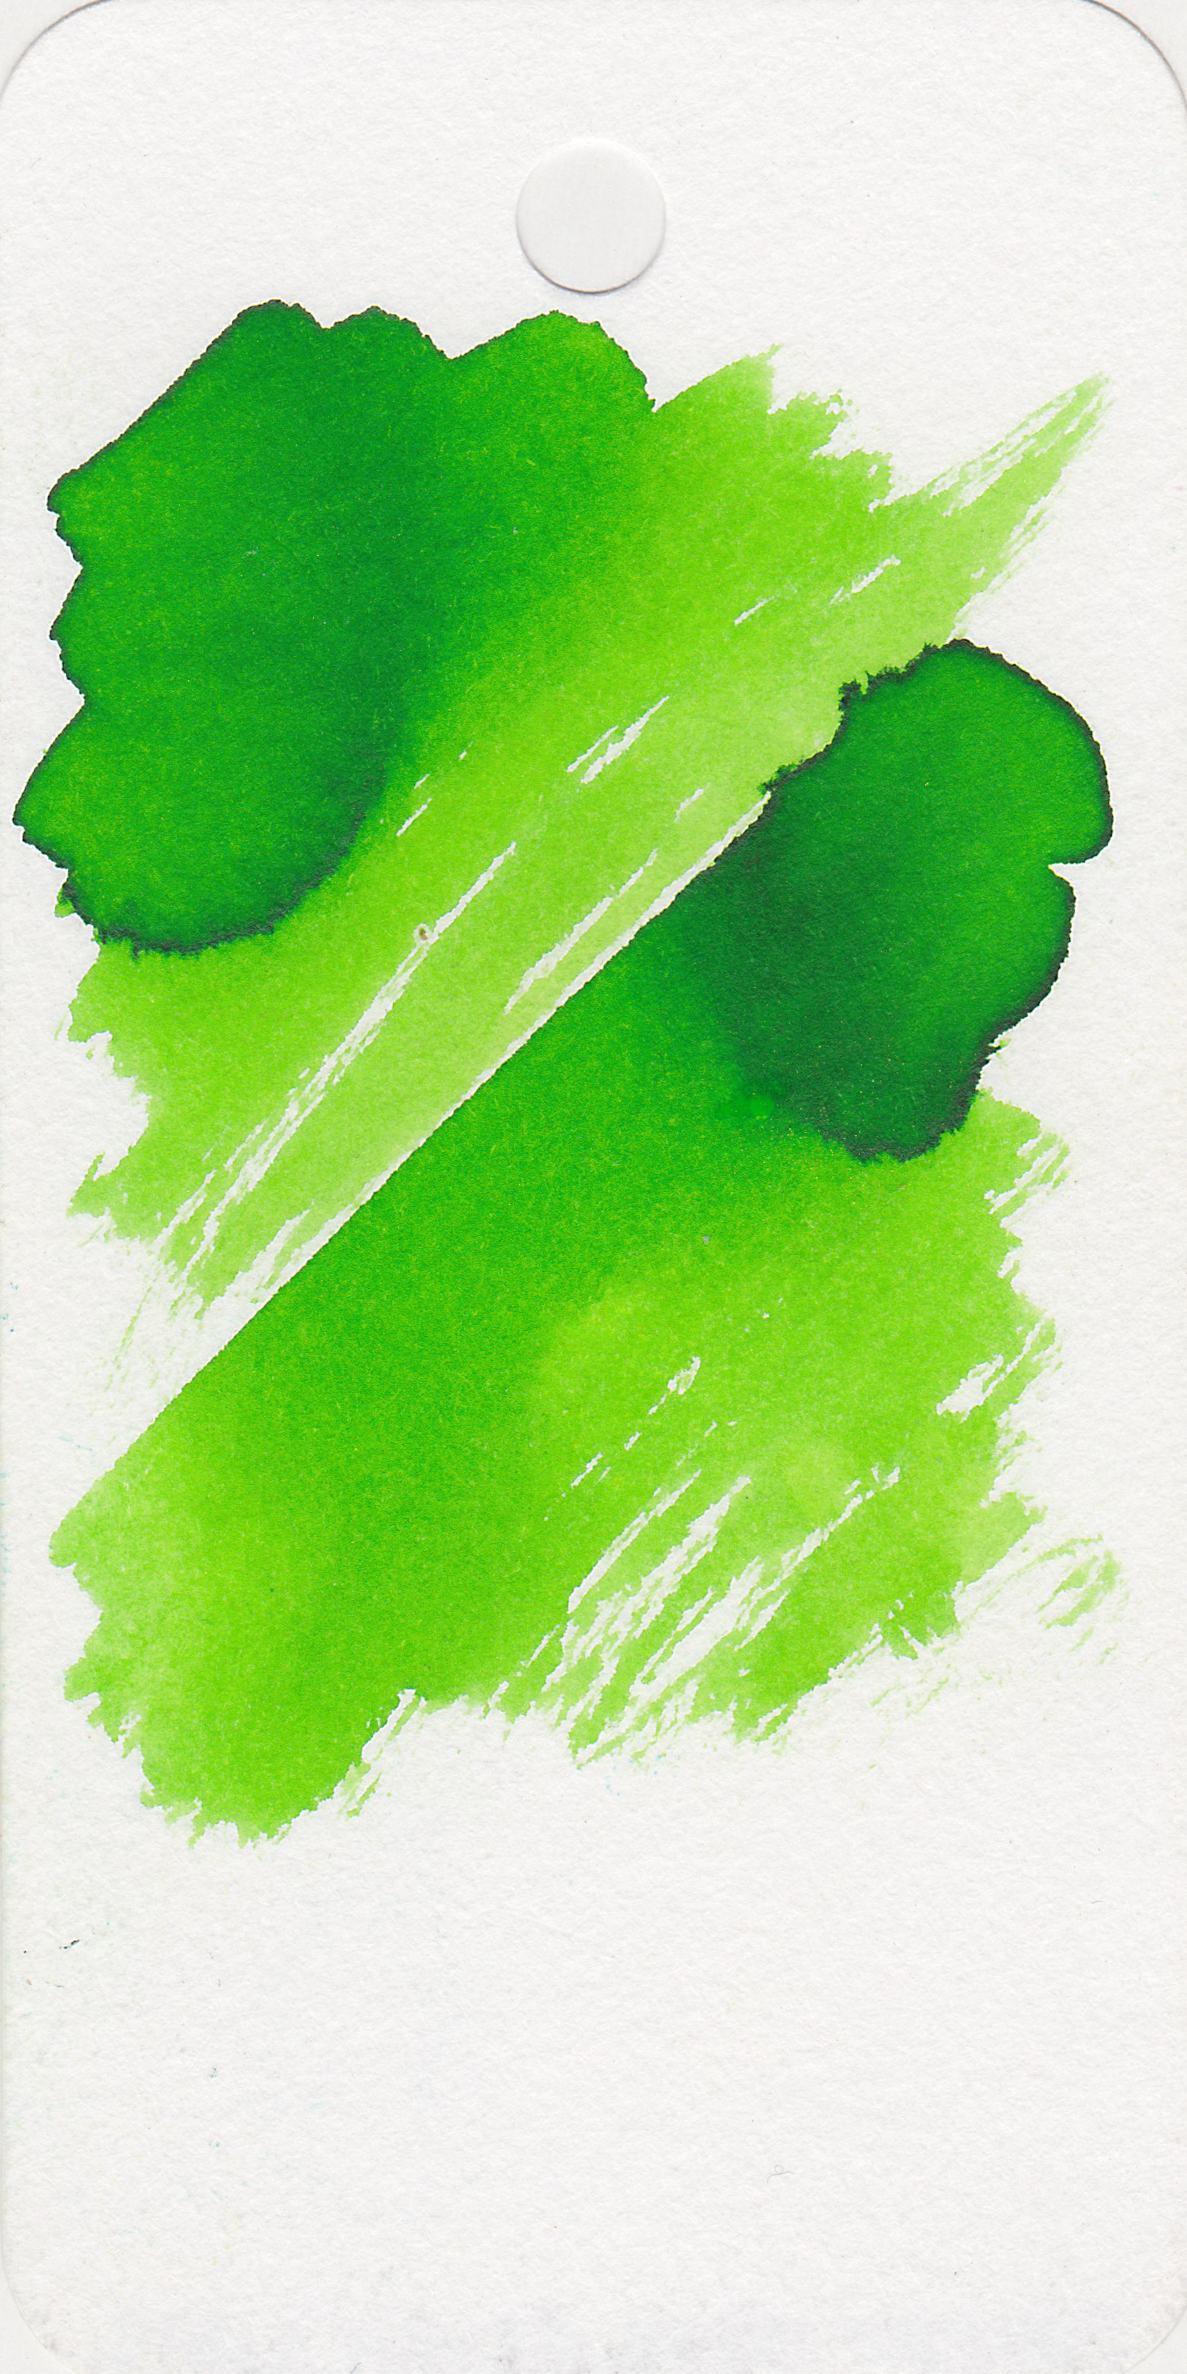 ro-green-green-5.jpg